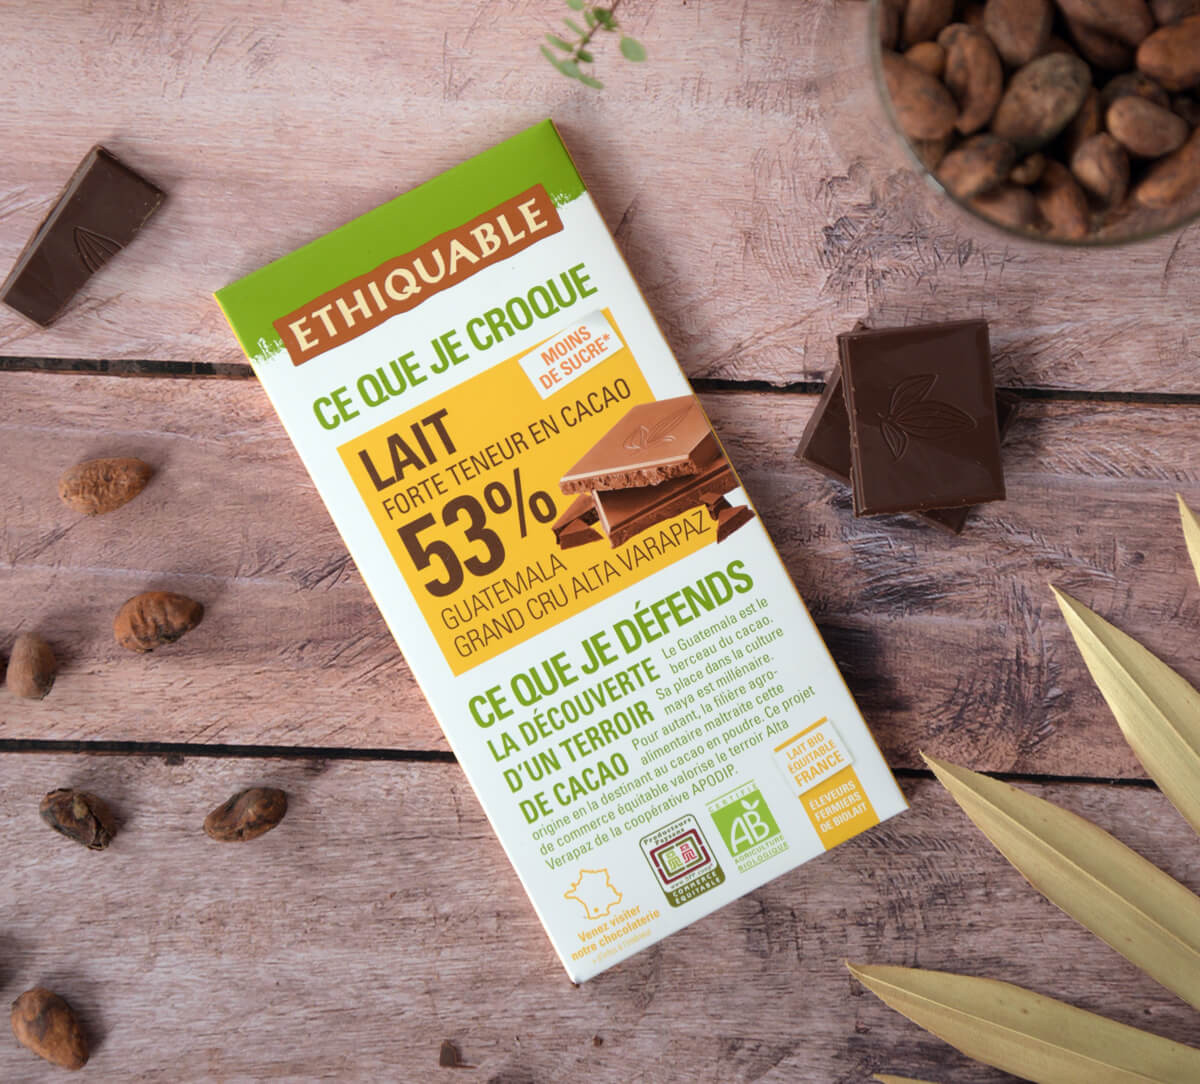 Ethiquable - Chocolat lait bio 53% cacao Guatemala issu du Commerce Equitable